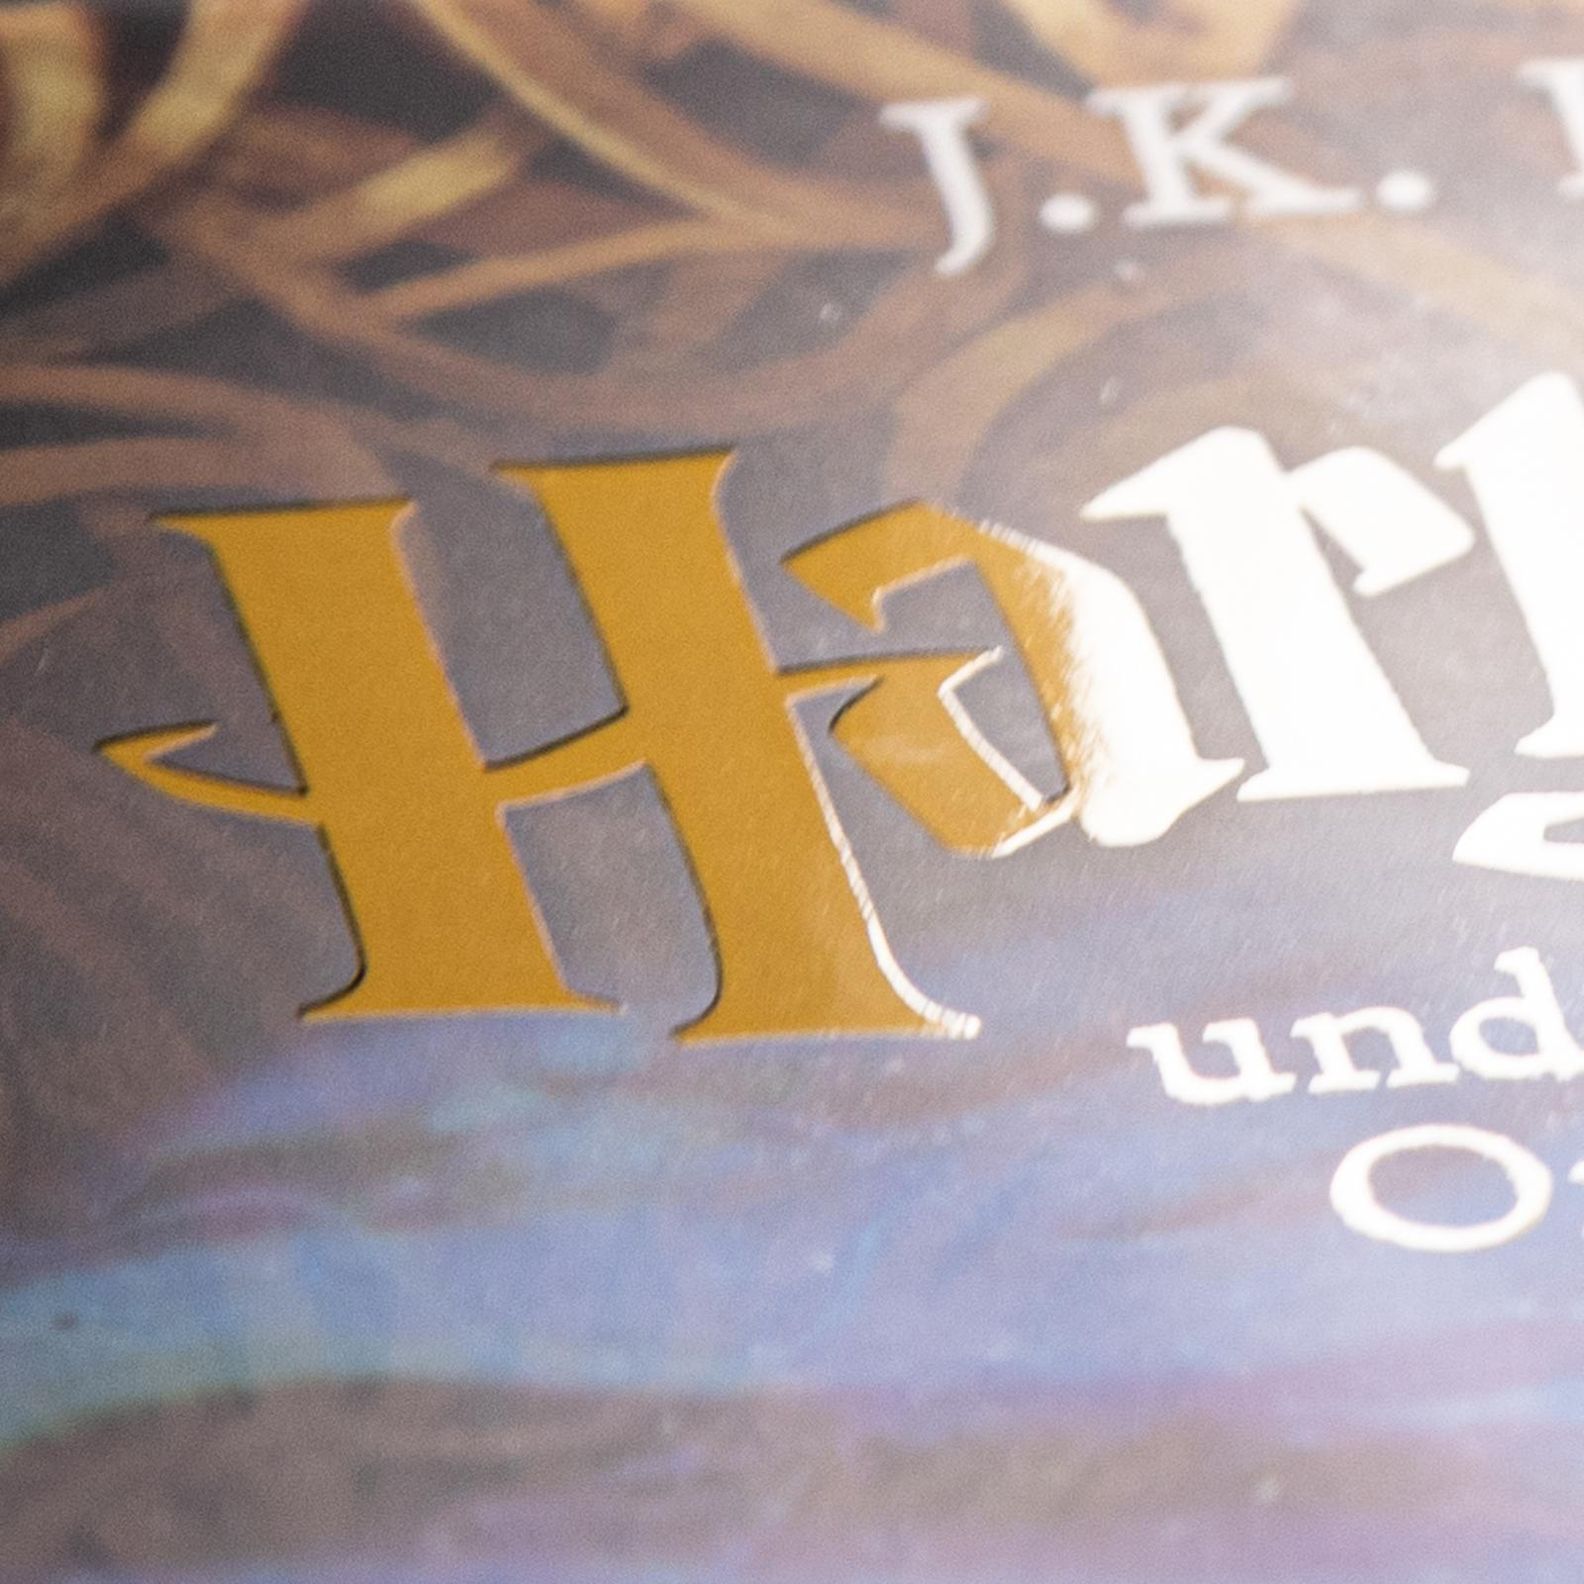 Harry Potter und der Orden des Phönix Harry Potter Schmuckausgabe Bd.5 Buch